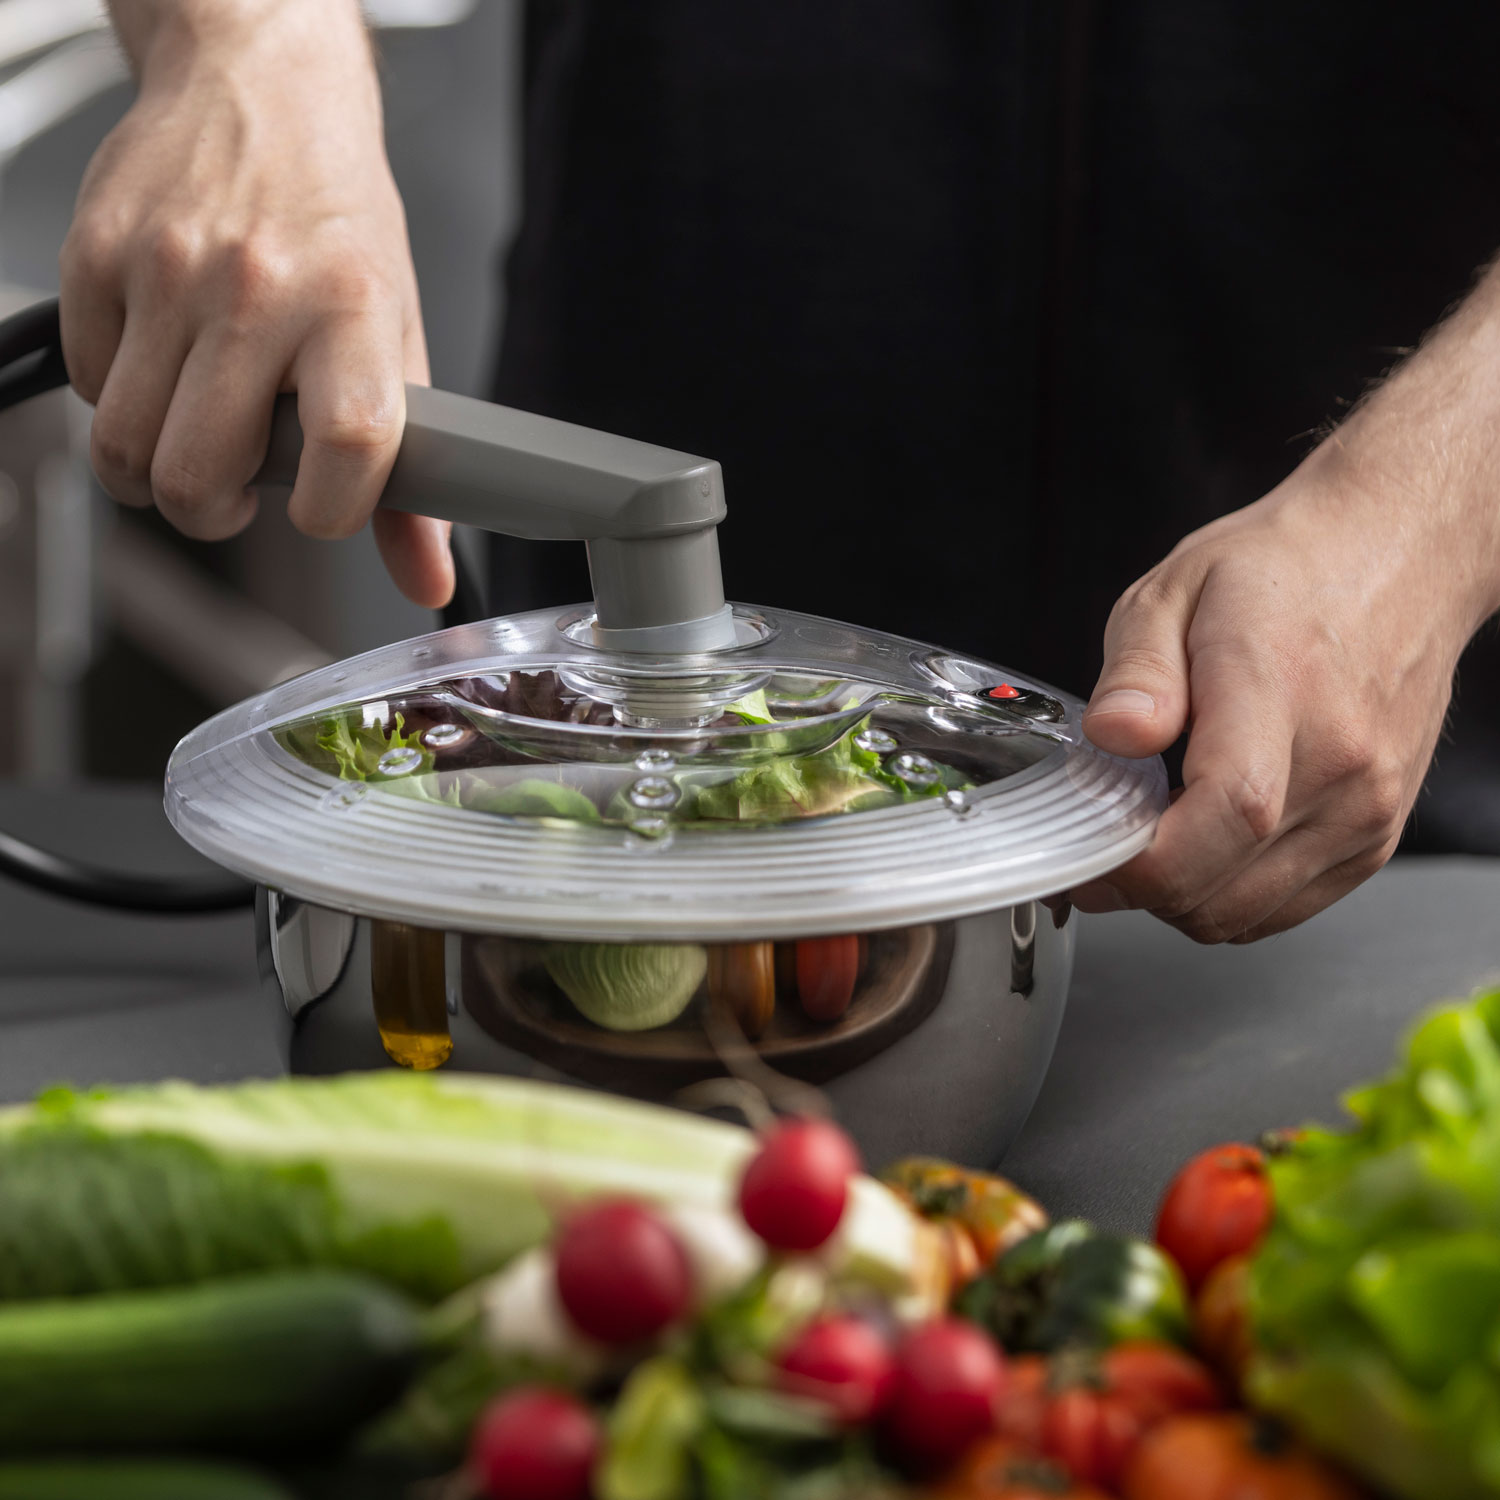 Salat wird im Vakuumbehälter aus Edelstahl mithilfe der Absaugvorrichtung vakuumiert